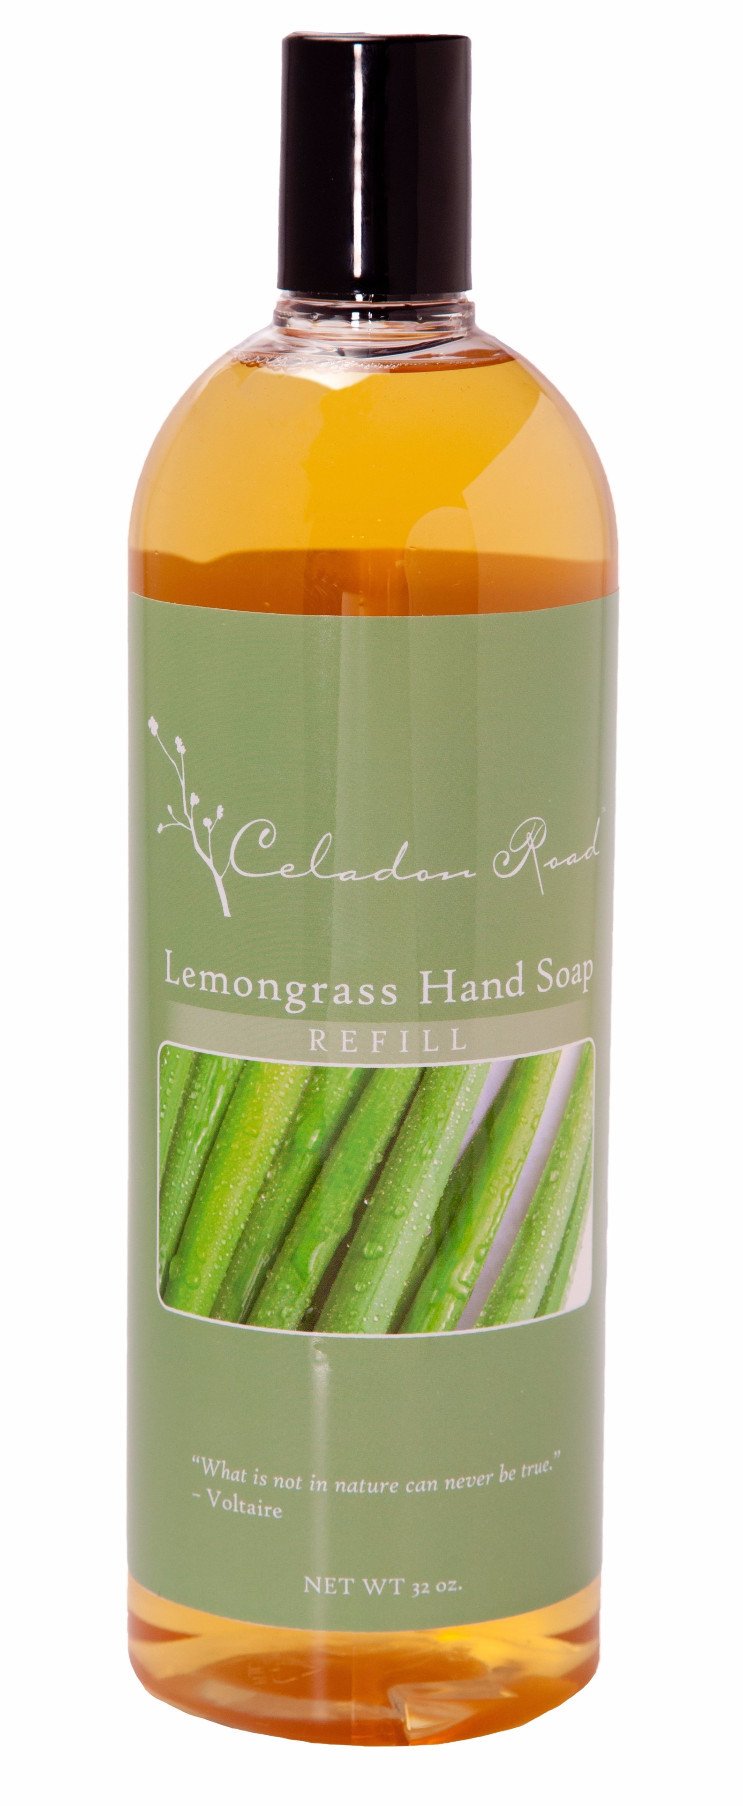 Lemongrass Foaming Hand Soap Refill- Celadon Road- www.celadonroad.com